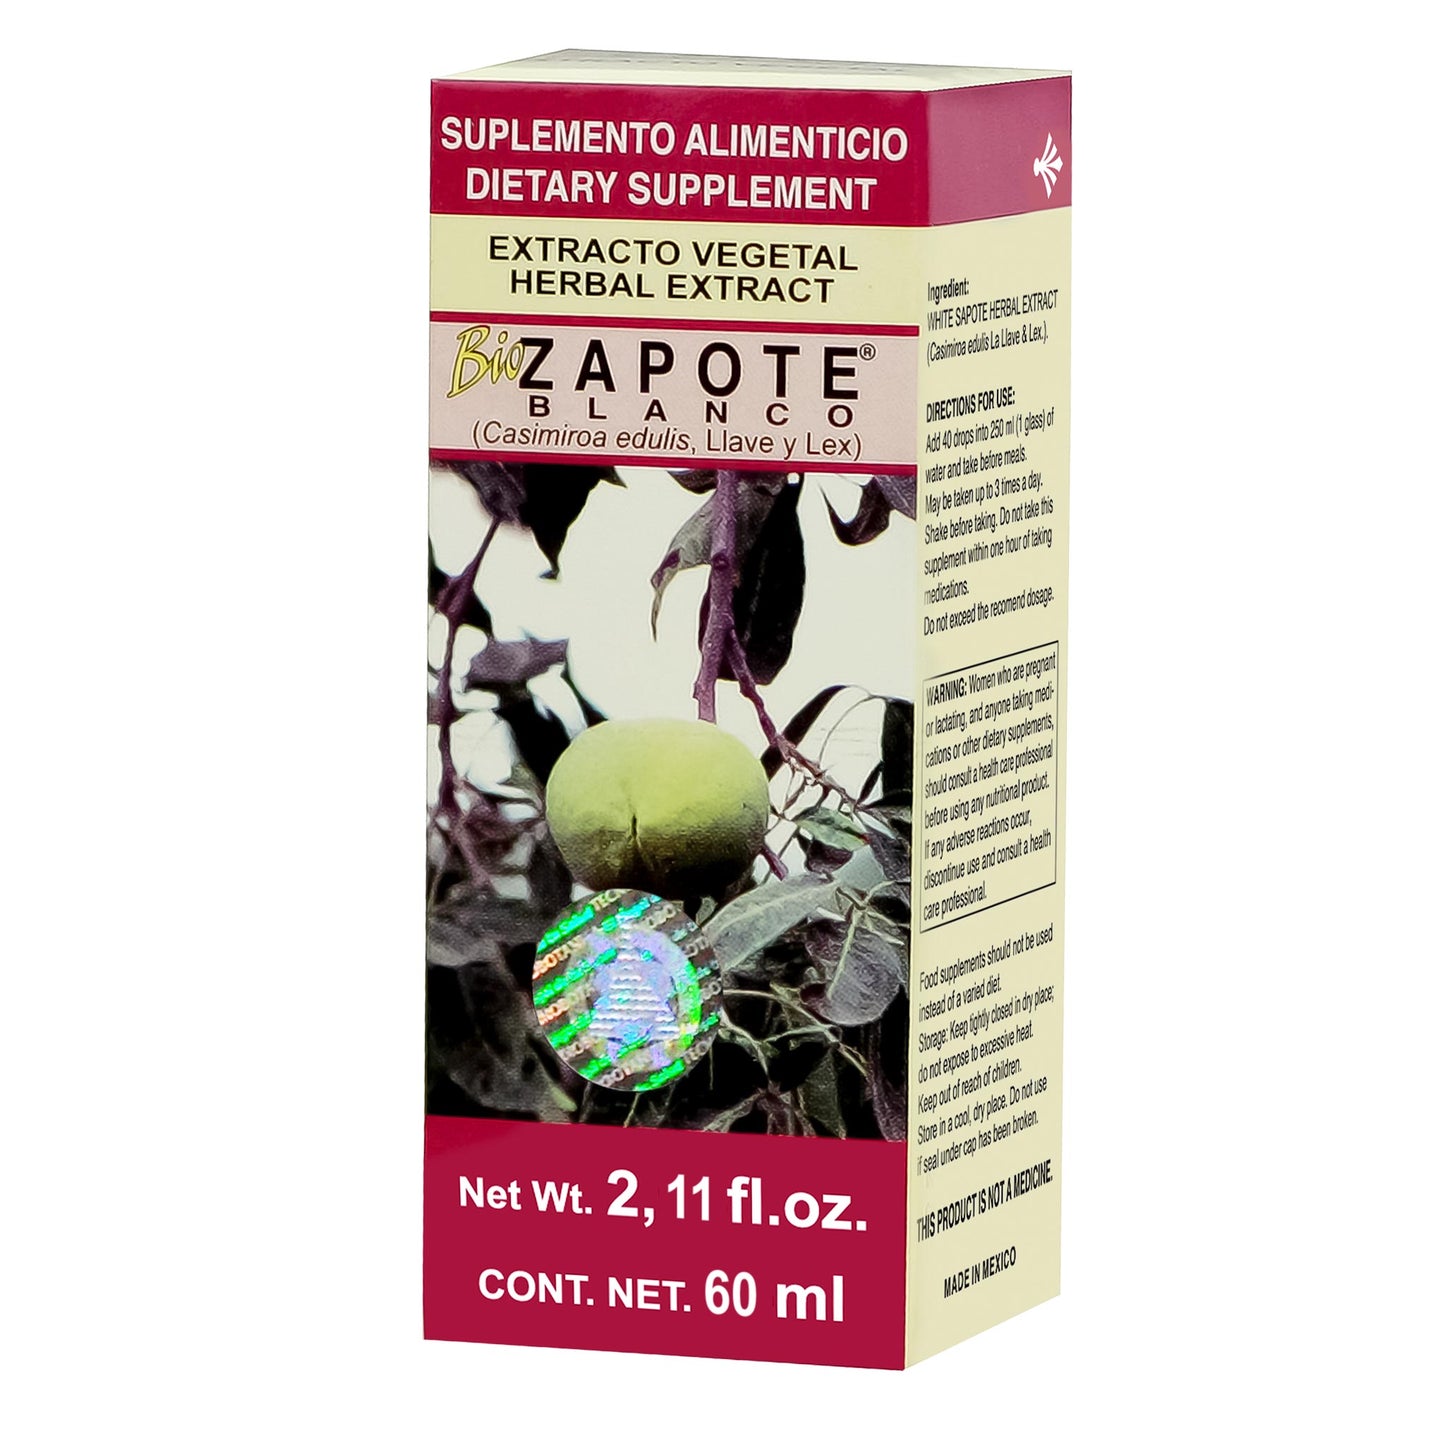 BIOZAPOTE BLANCO ® extracto vegetal 75ml